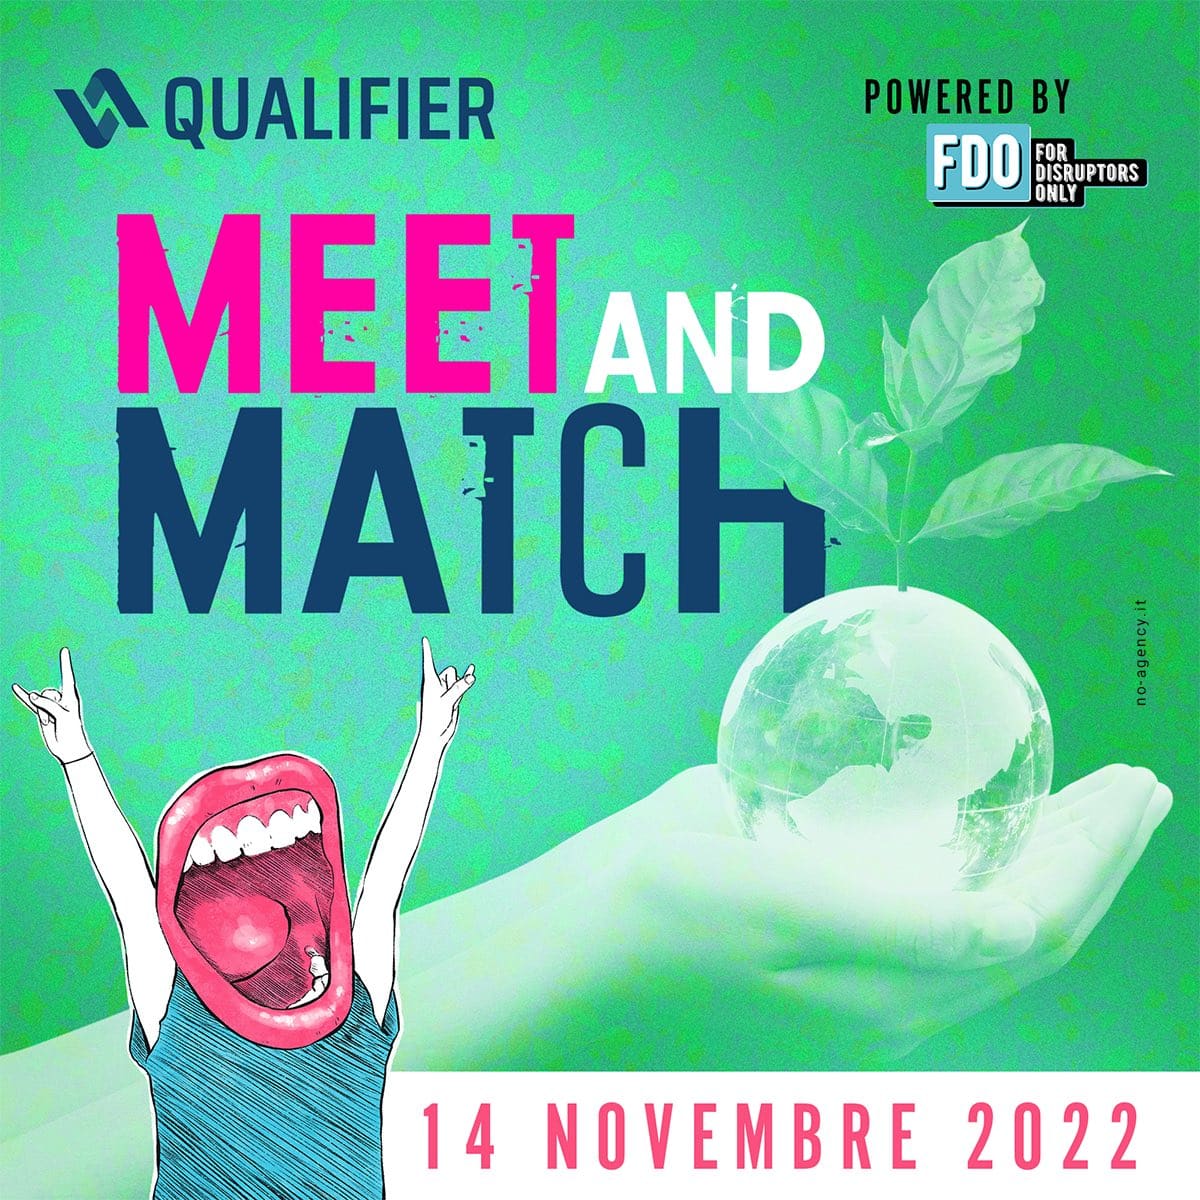 Meet And Match Qualifier